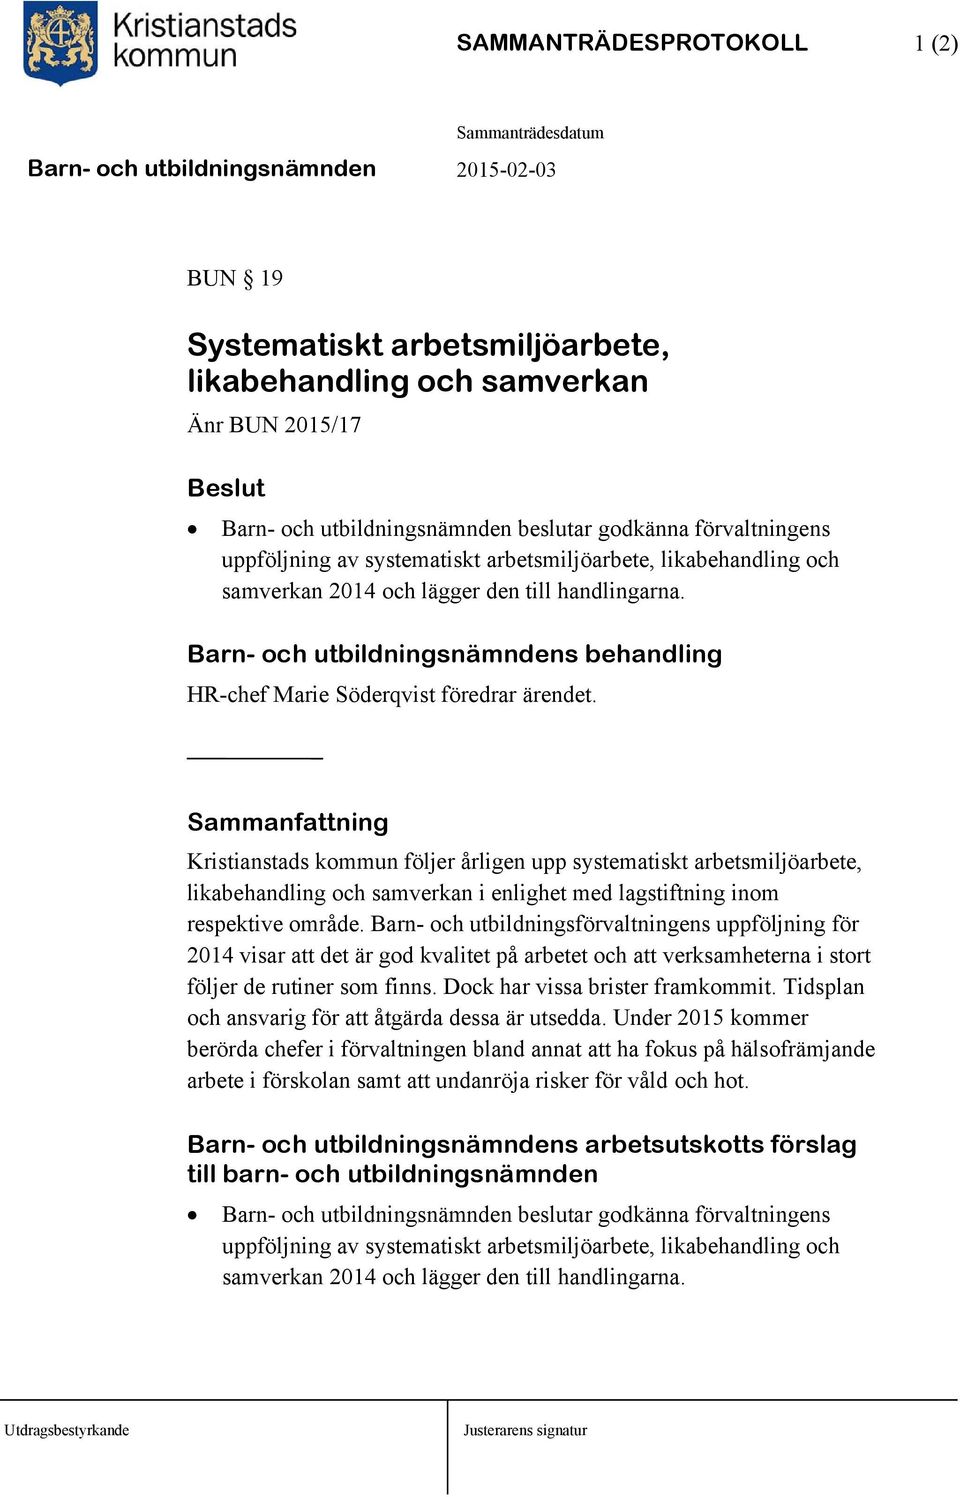 Sammanfattning Kristianstads kommun följer årligen upp systematiskt arbetsmiljöarbete, likabehandling och samverkan i enlighet med lagstiftning inom respektive område.